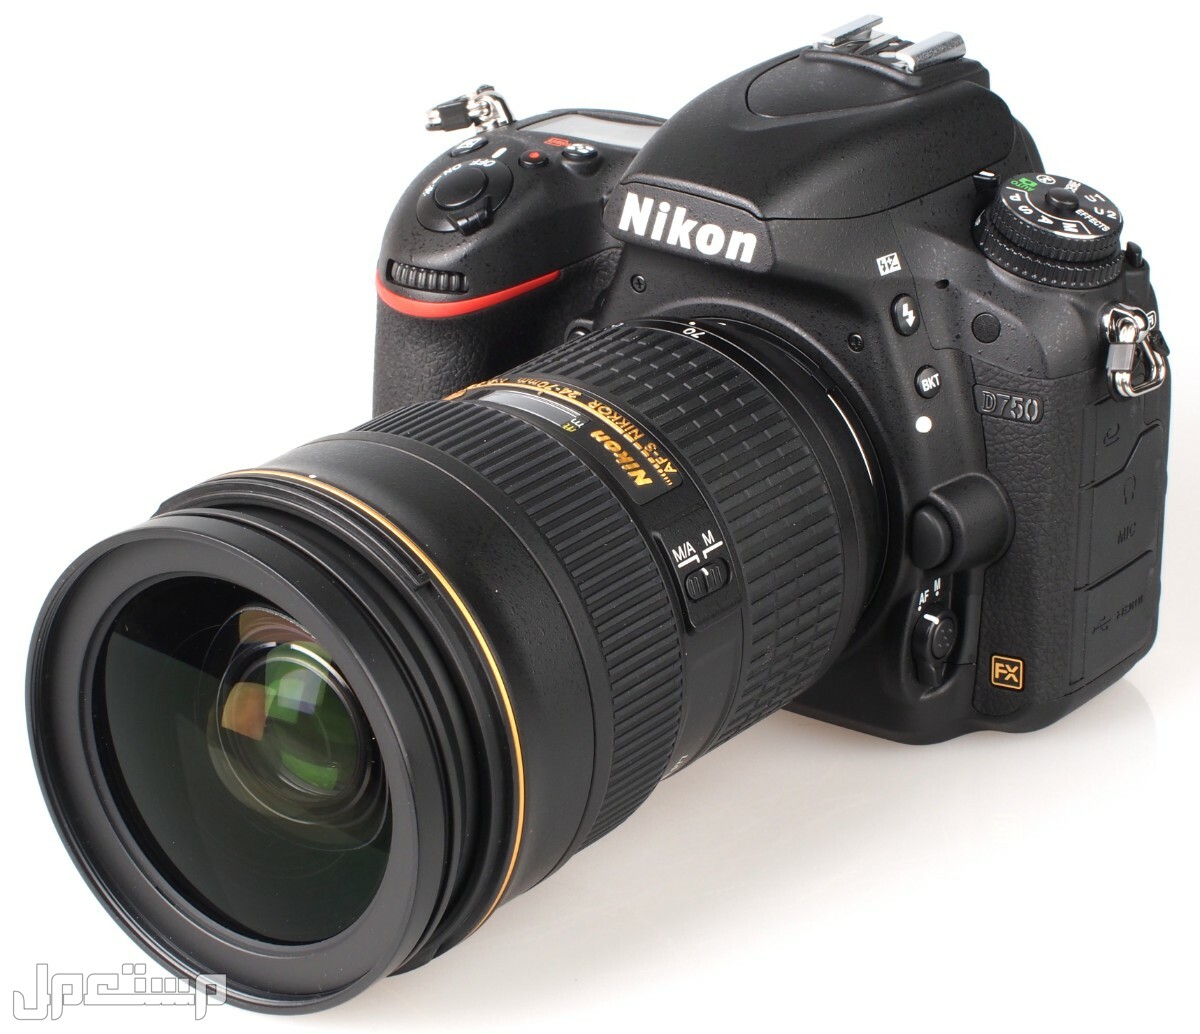 مواصفات ومميزات وأسعار أفضل أنواع كاميرات نيكون للمحترفين في ليبيا كاميرا Nikon D750